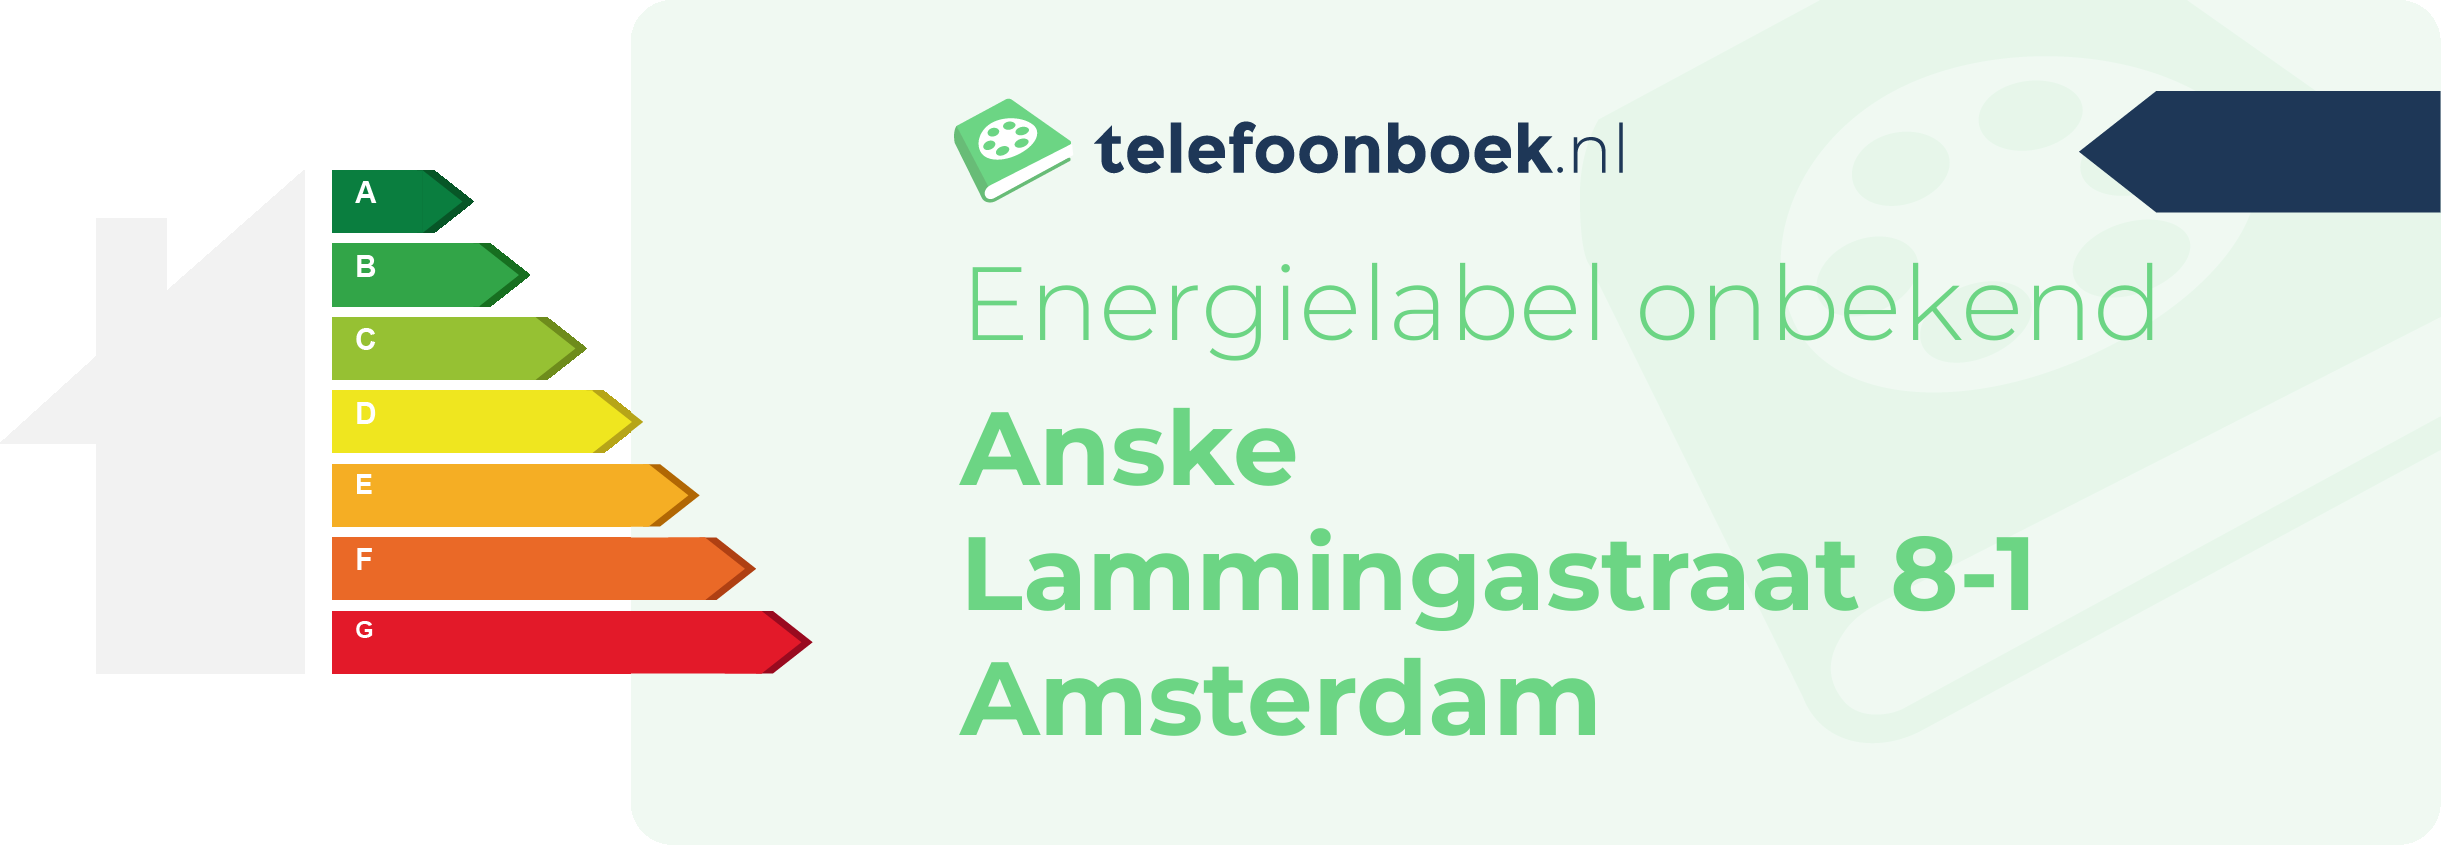 Energielabel Anske Lammingastraat 8-1 Amsterdam